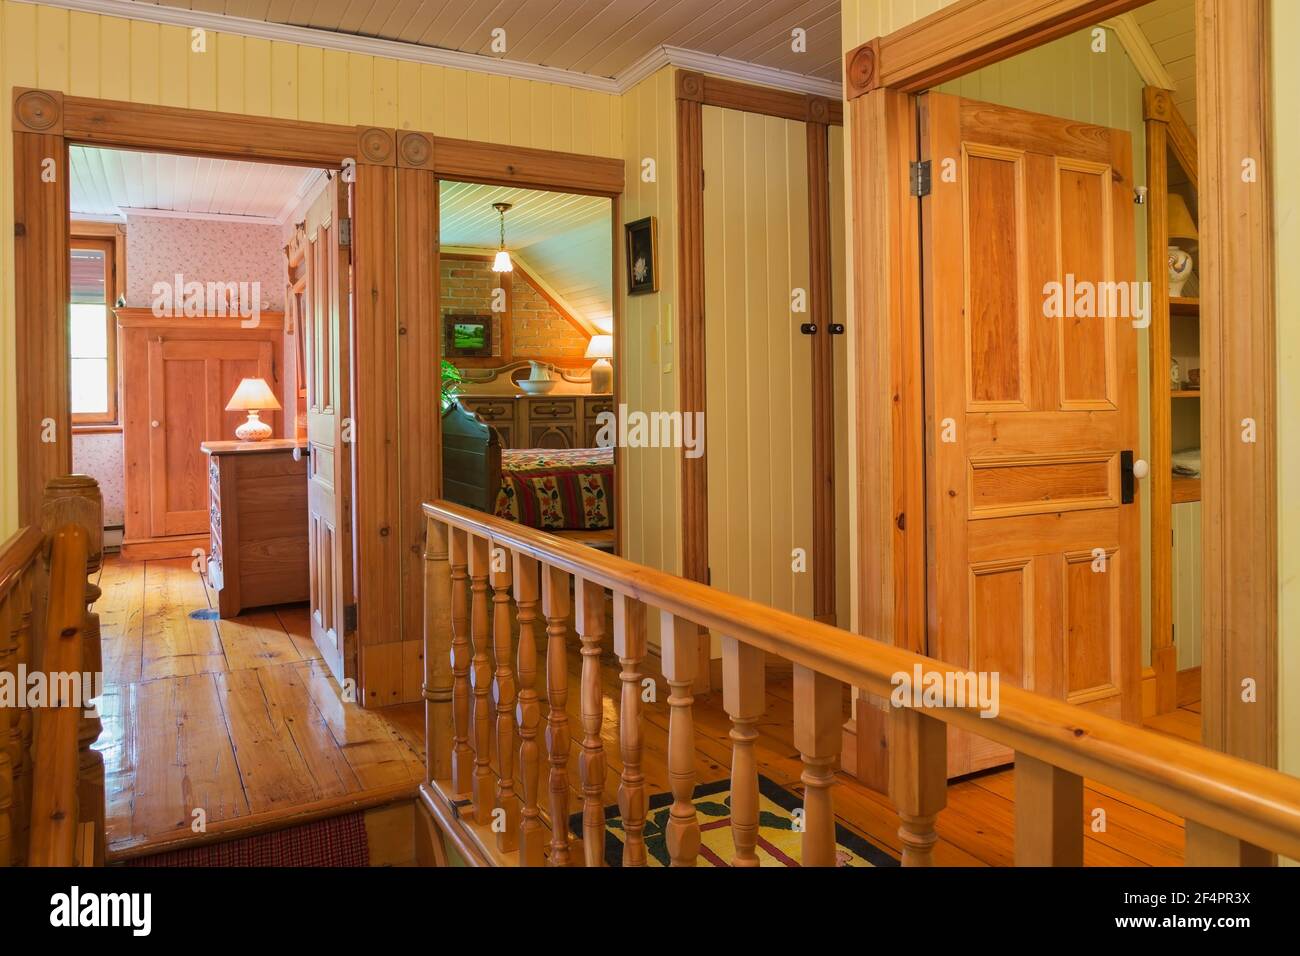 Corridoio e porte aperte delle camere e del bagno ospiti, ringhiera in legno d'acero al piano superiore con pavimenti Emorlock orientale in vecchia casa Foto Stock